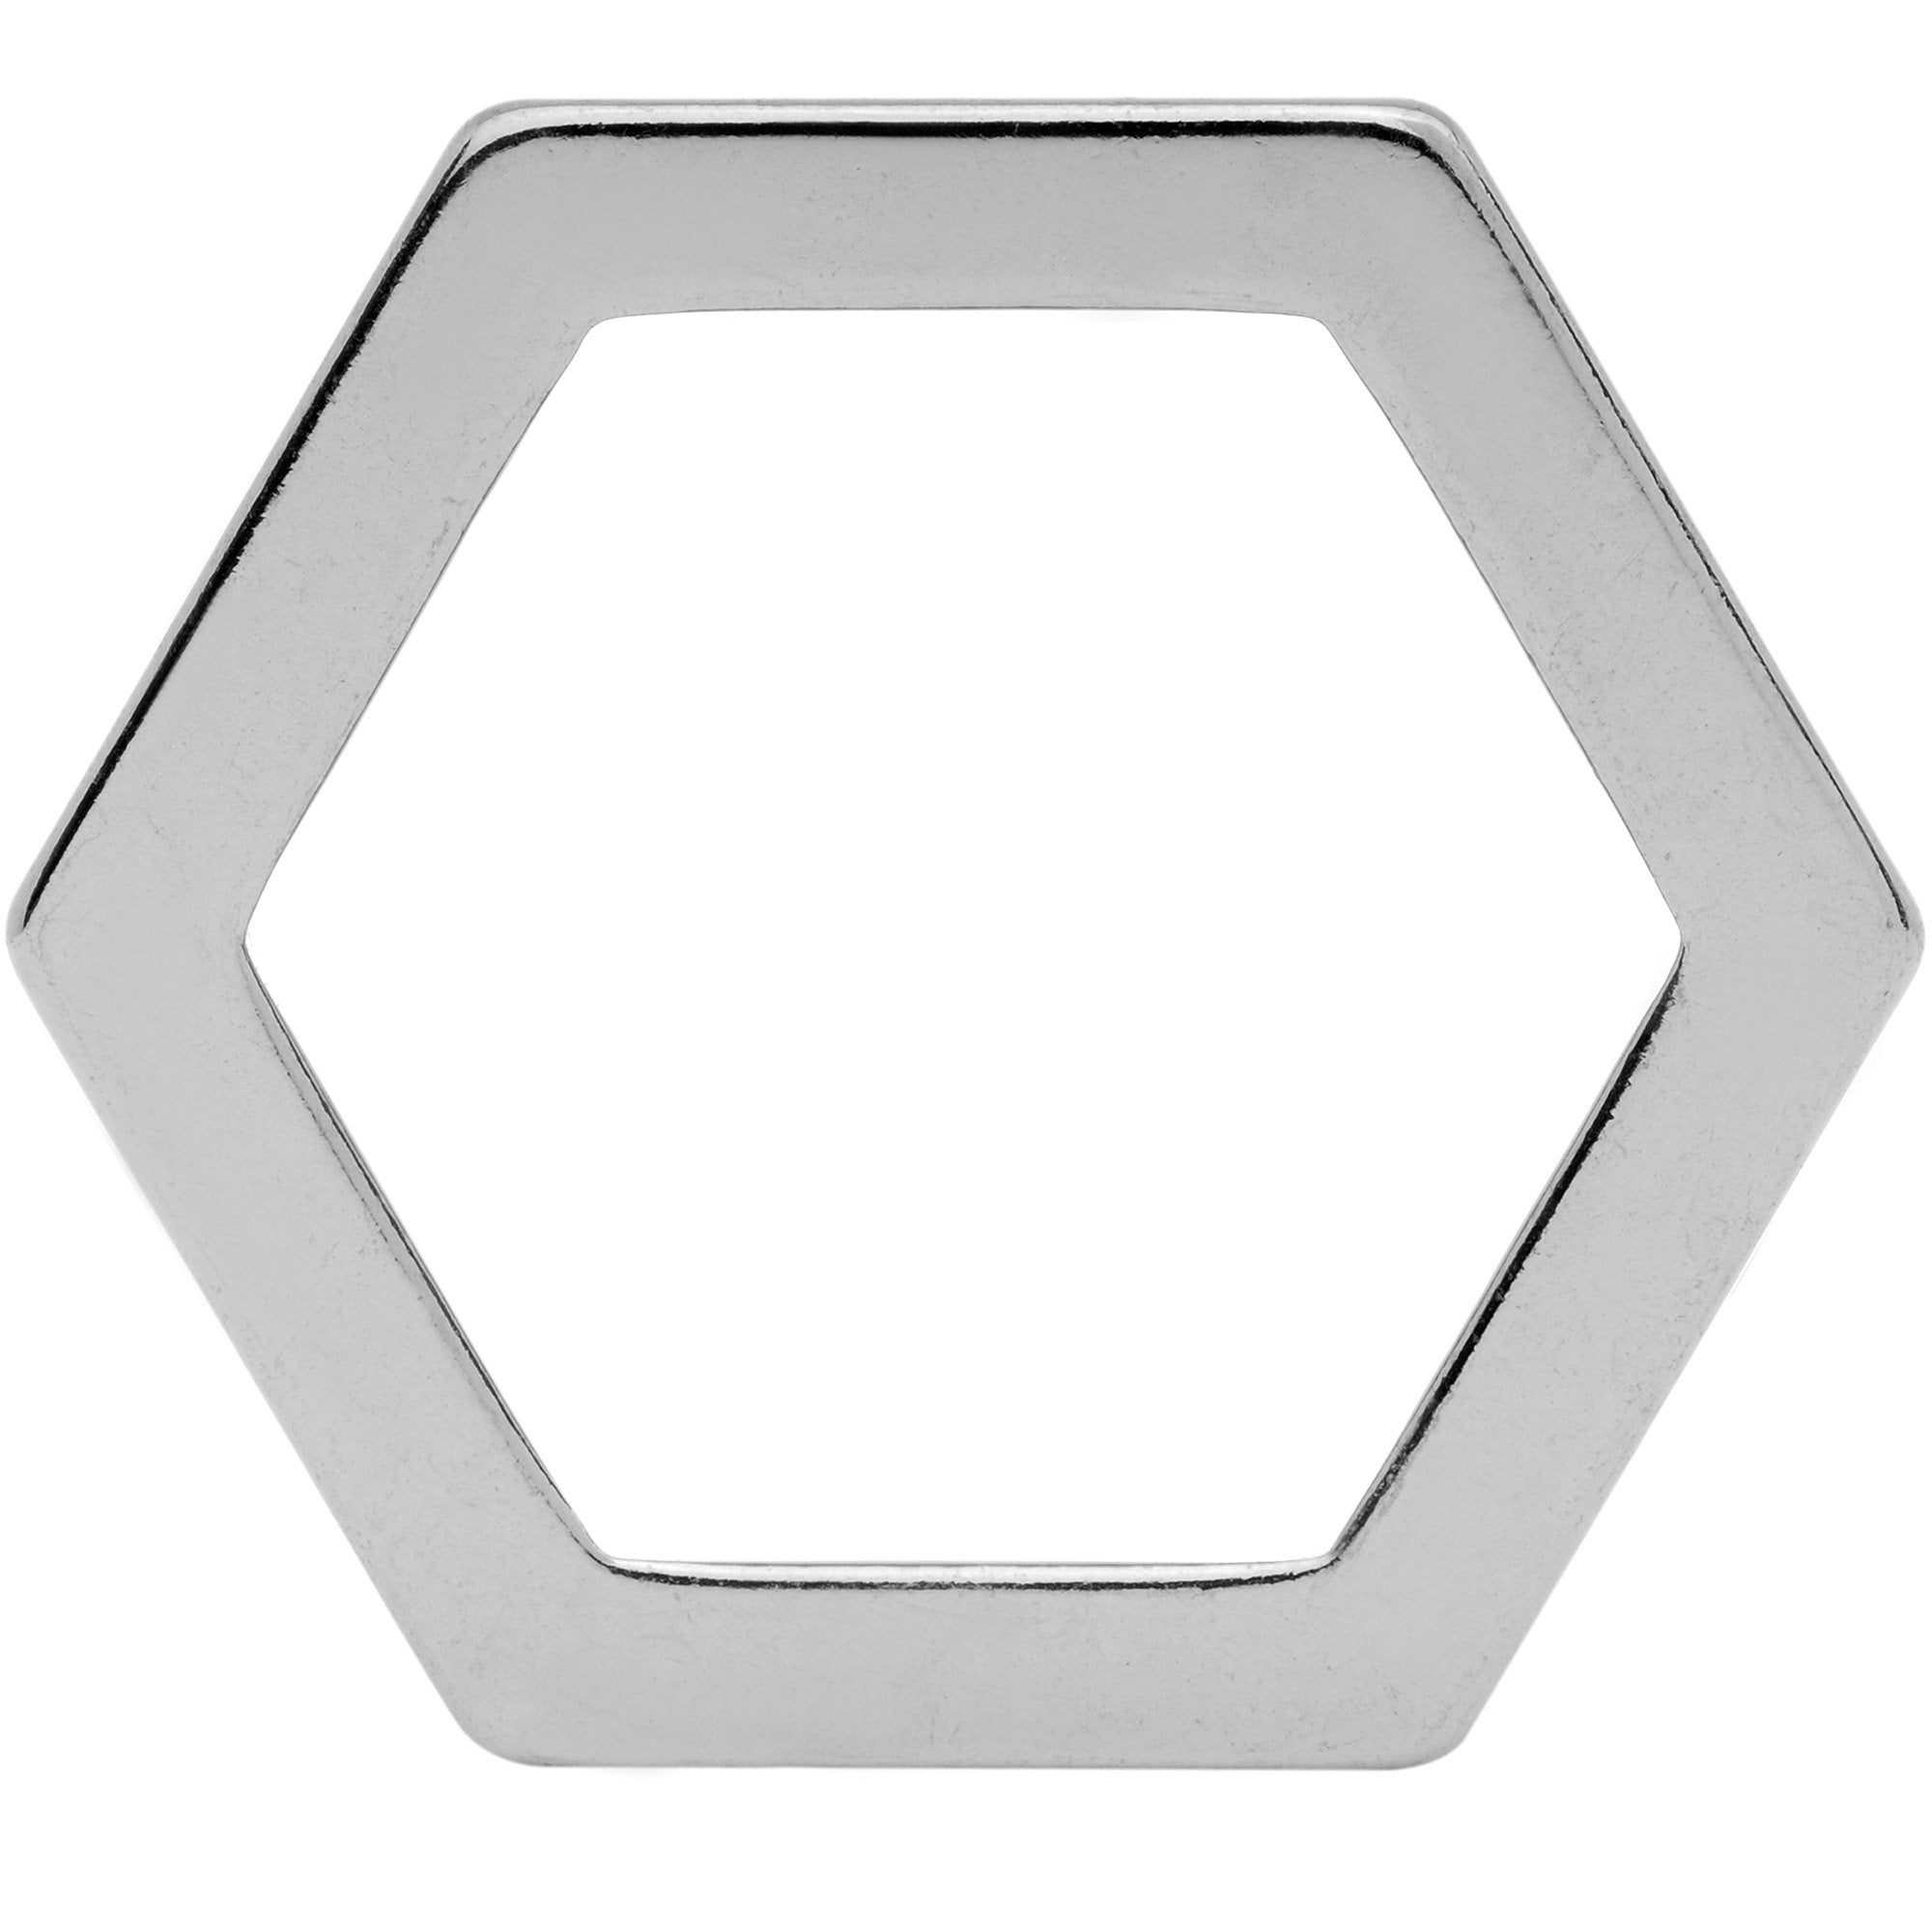 25mm Geometric Hexagon Screw Fit Tunnel Plug Set